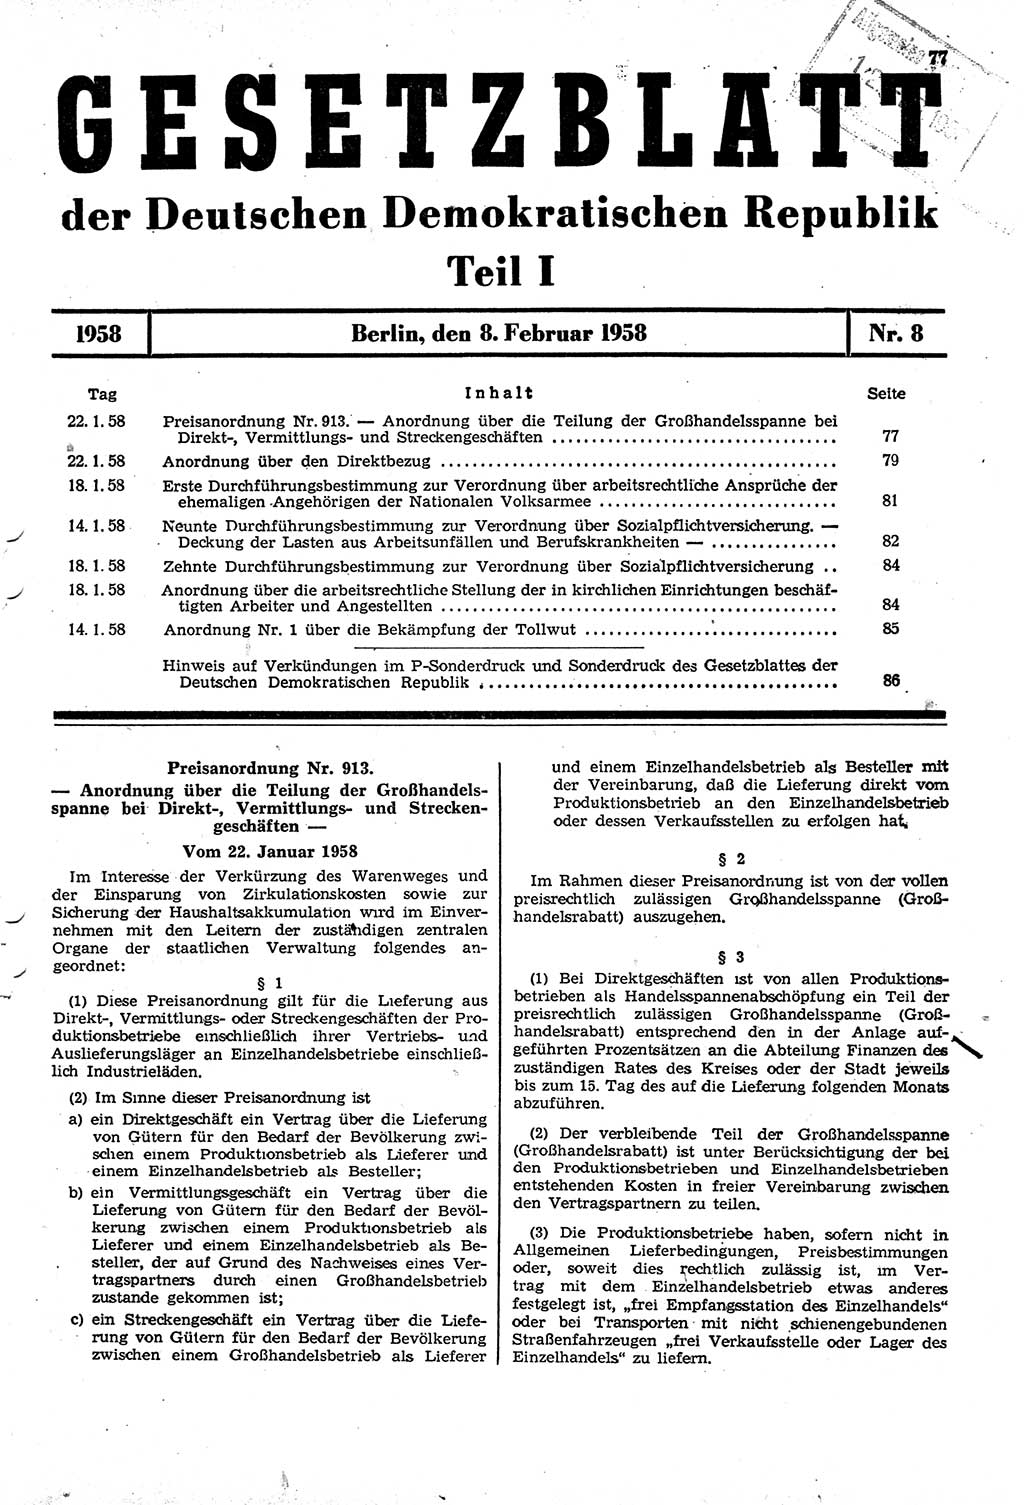 Gesetzblatt (GBl.) der Deutschen Demokratischen Republik (DDR) Teil Ⅰ 1958, Seite 77 (GBl. DDR Ⅰ 1958, S. 77)